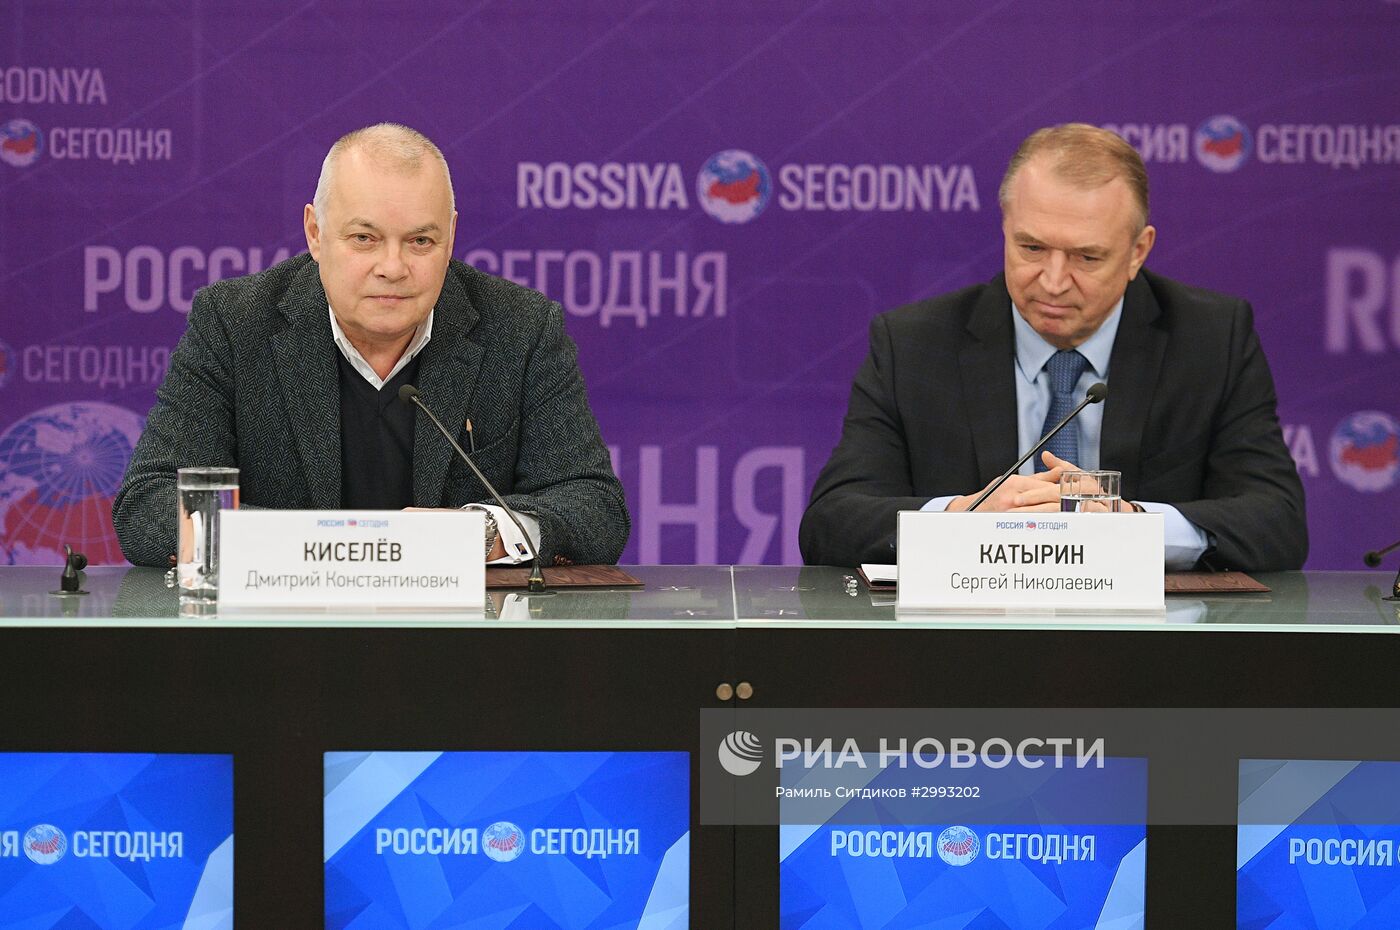 Пресс-конференция "Информация как важнейшее условие развития бизнеса в России"